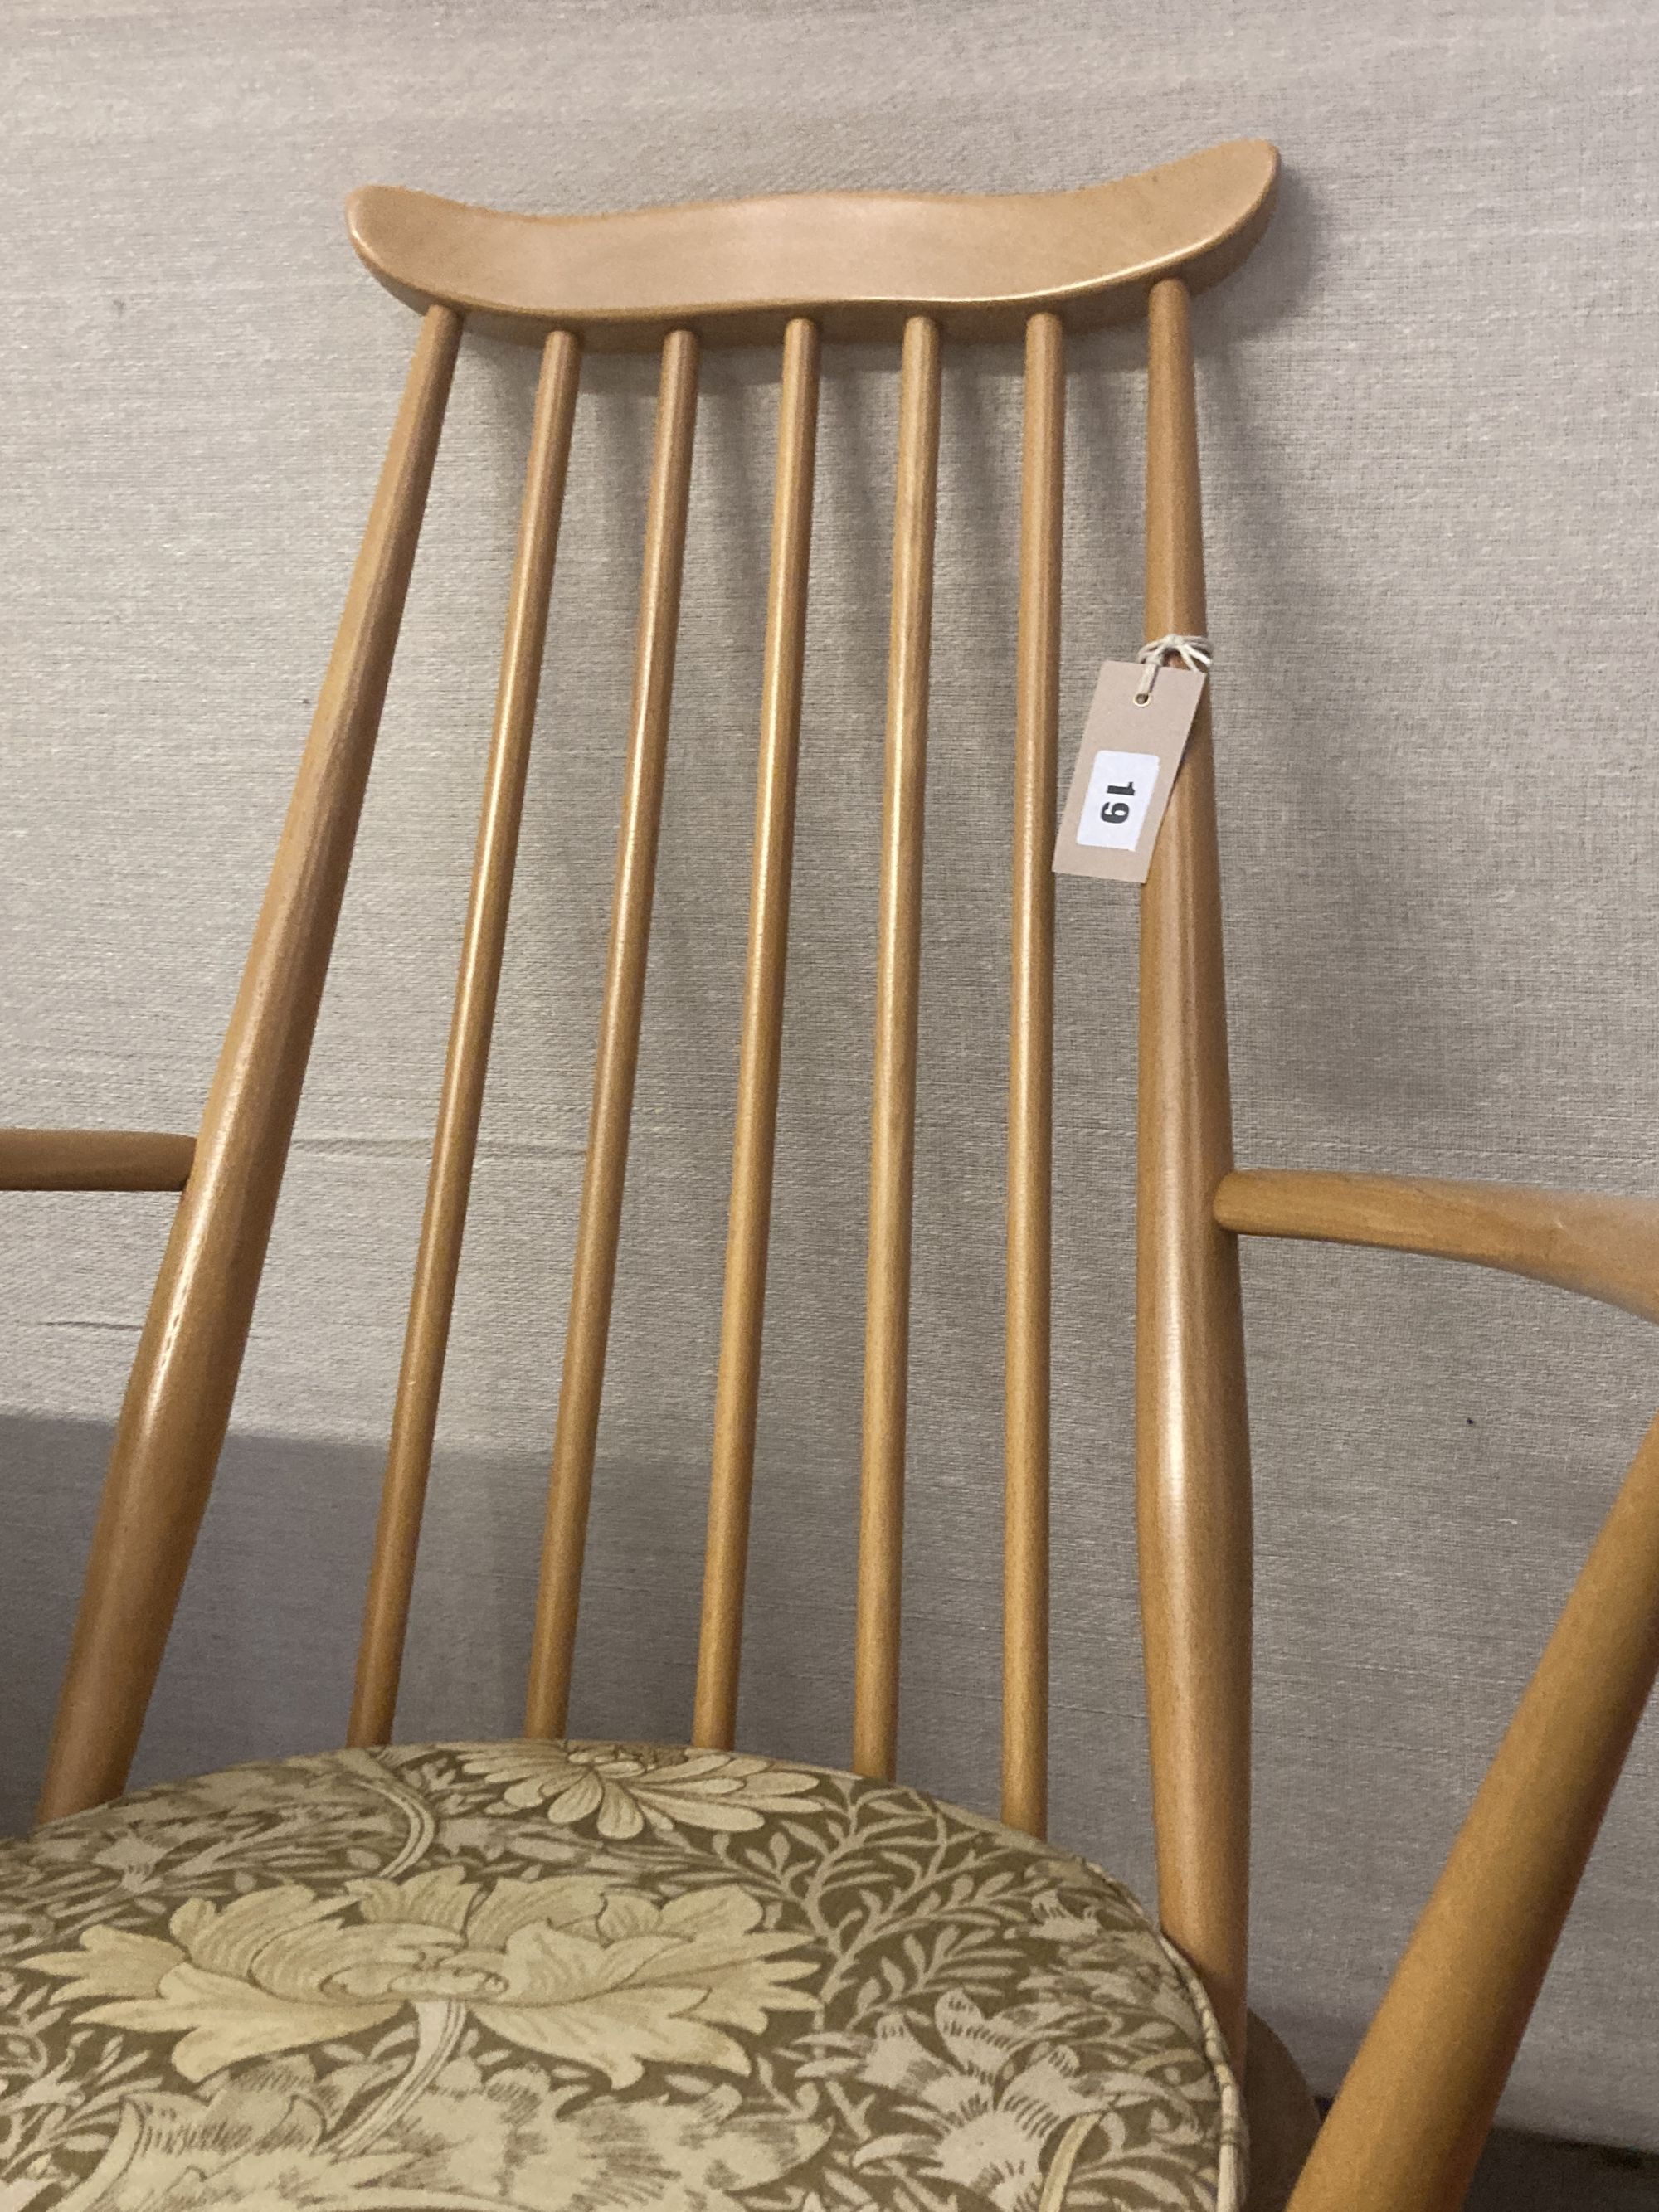 An Ercol stickback beech rocking chair